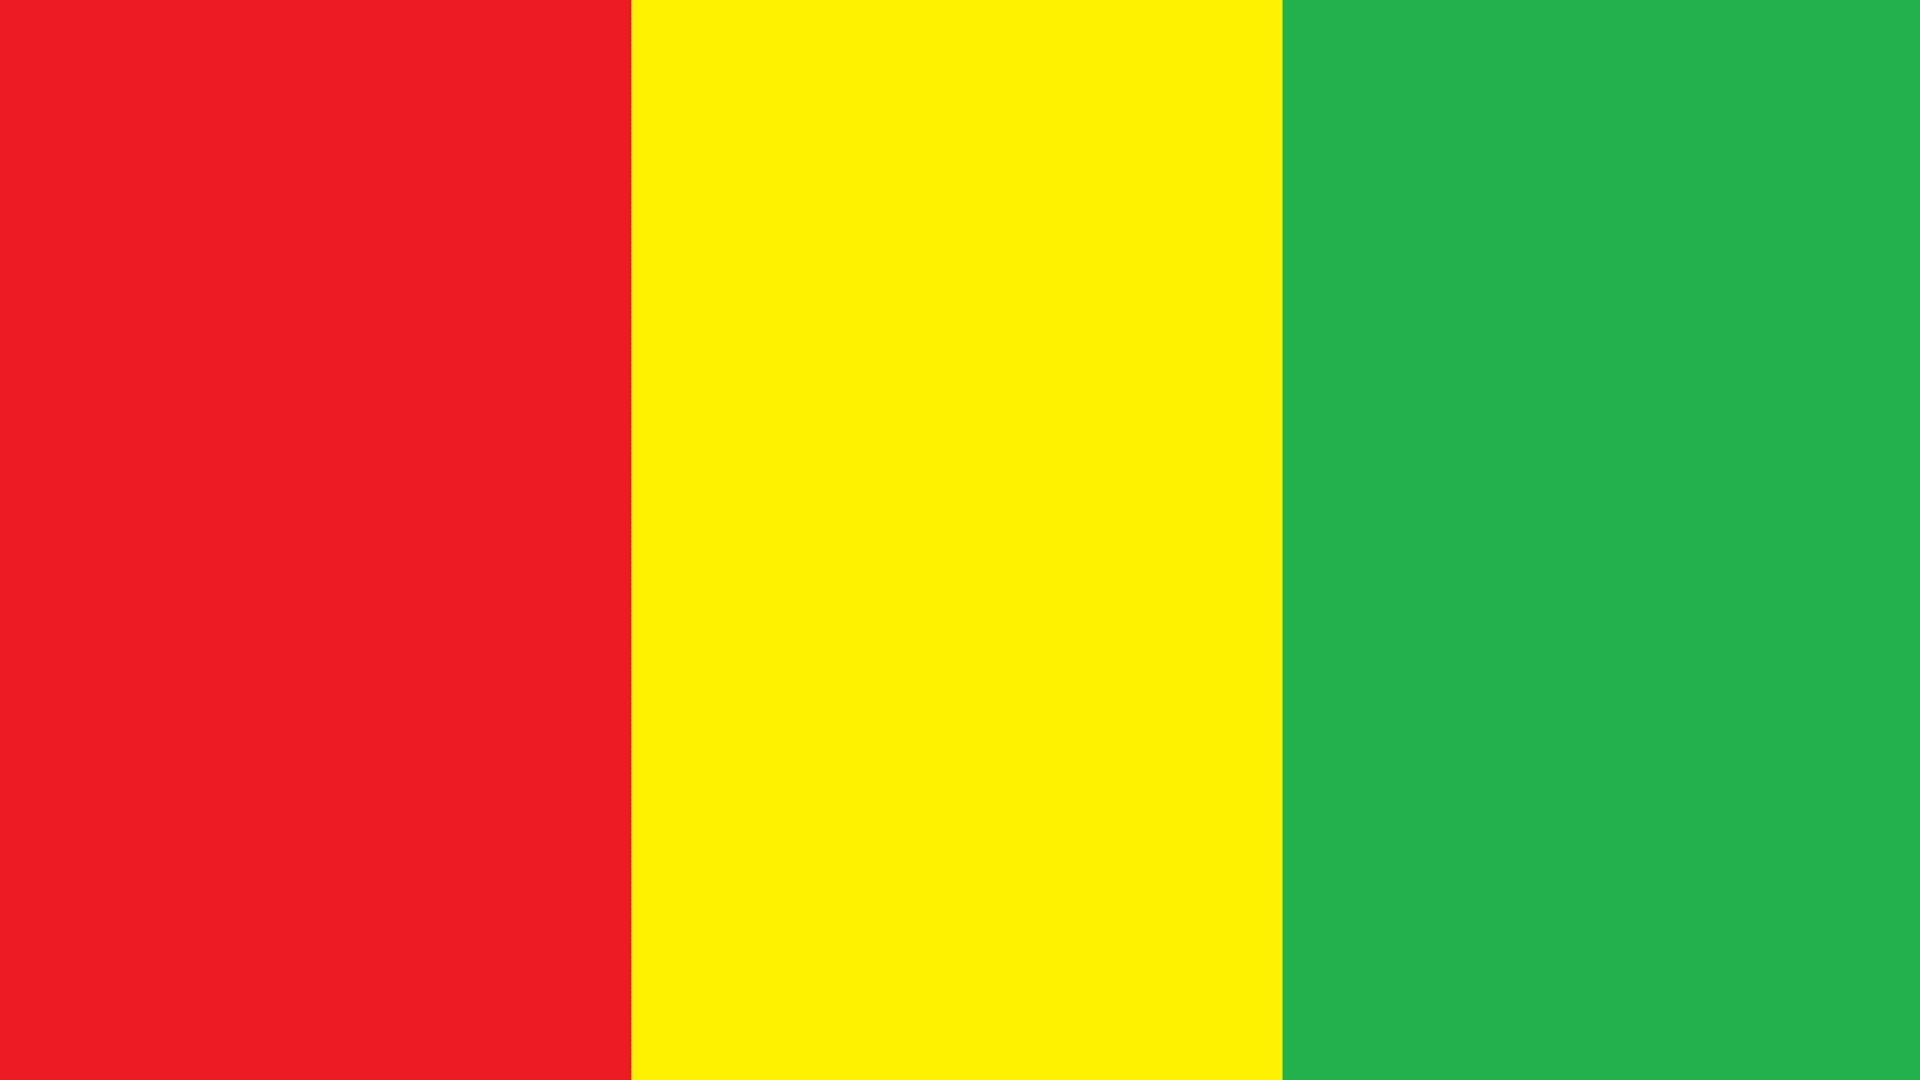 O desenho da bandeira consiste em um retângulo, dividido verticalmente em três faixas de larguras iguais, sendo a primeira a partir do mastro, vermelha, a segunda amarela e a terceira verde.